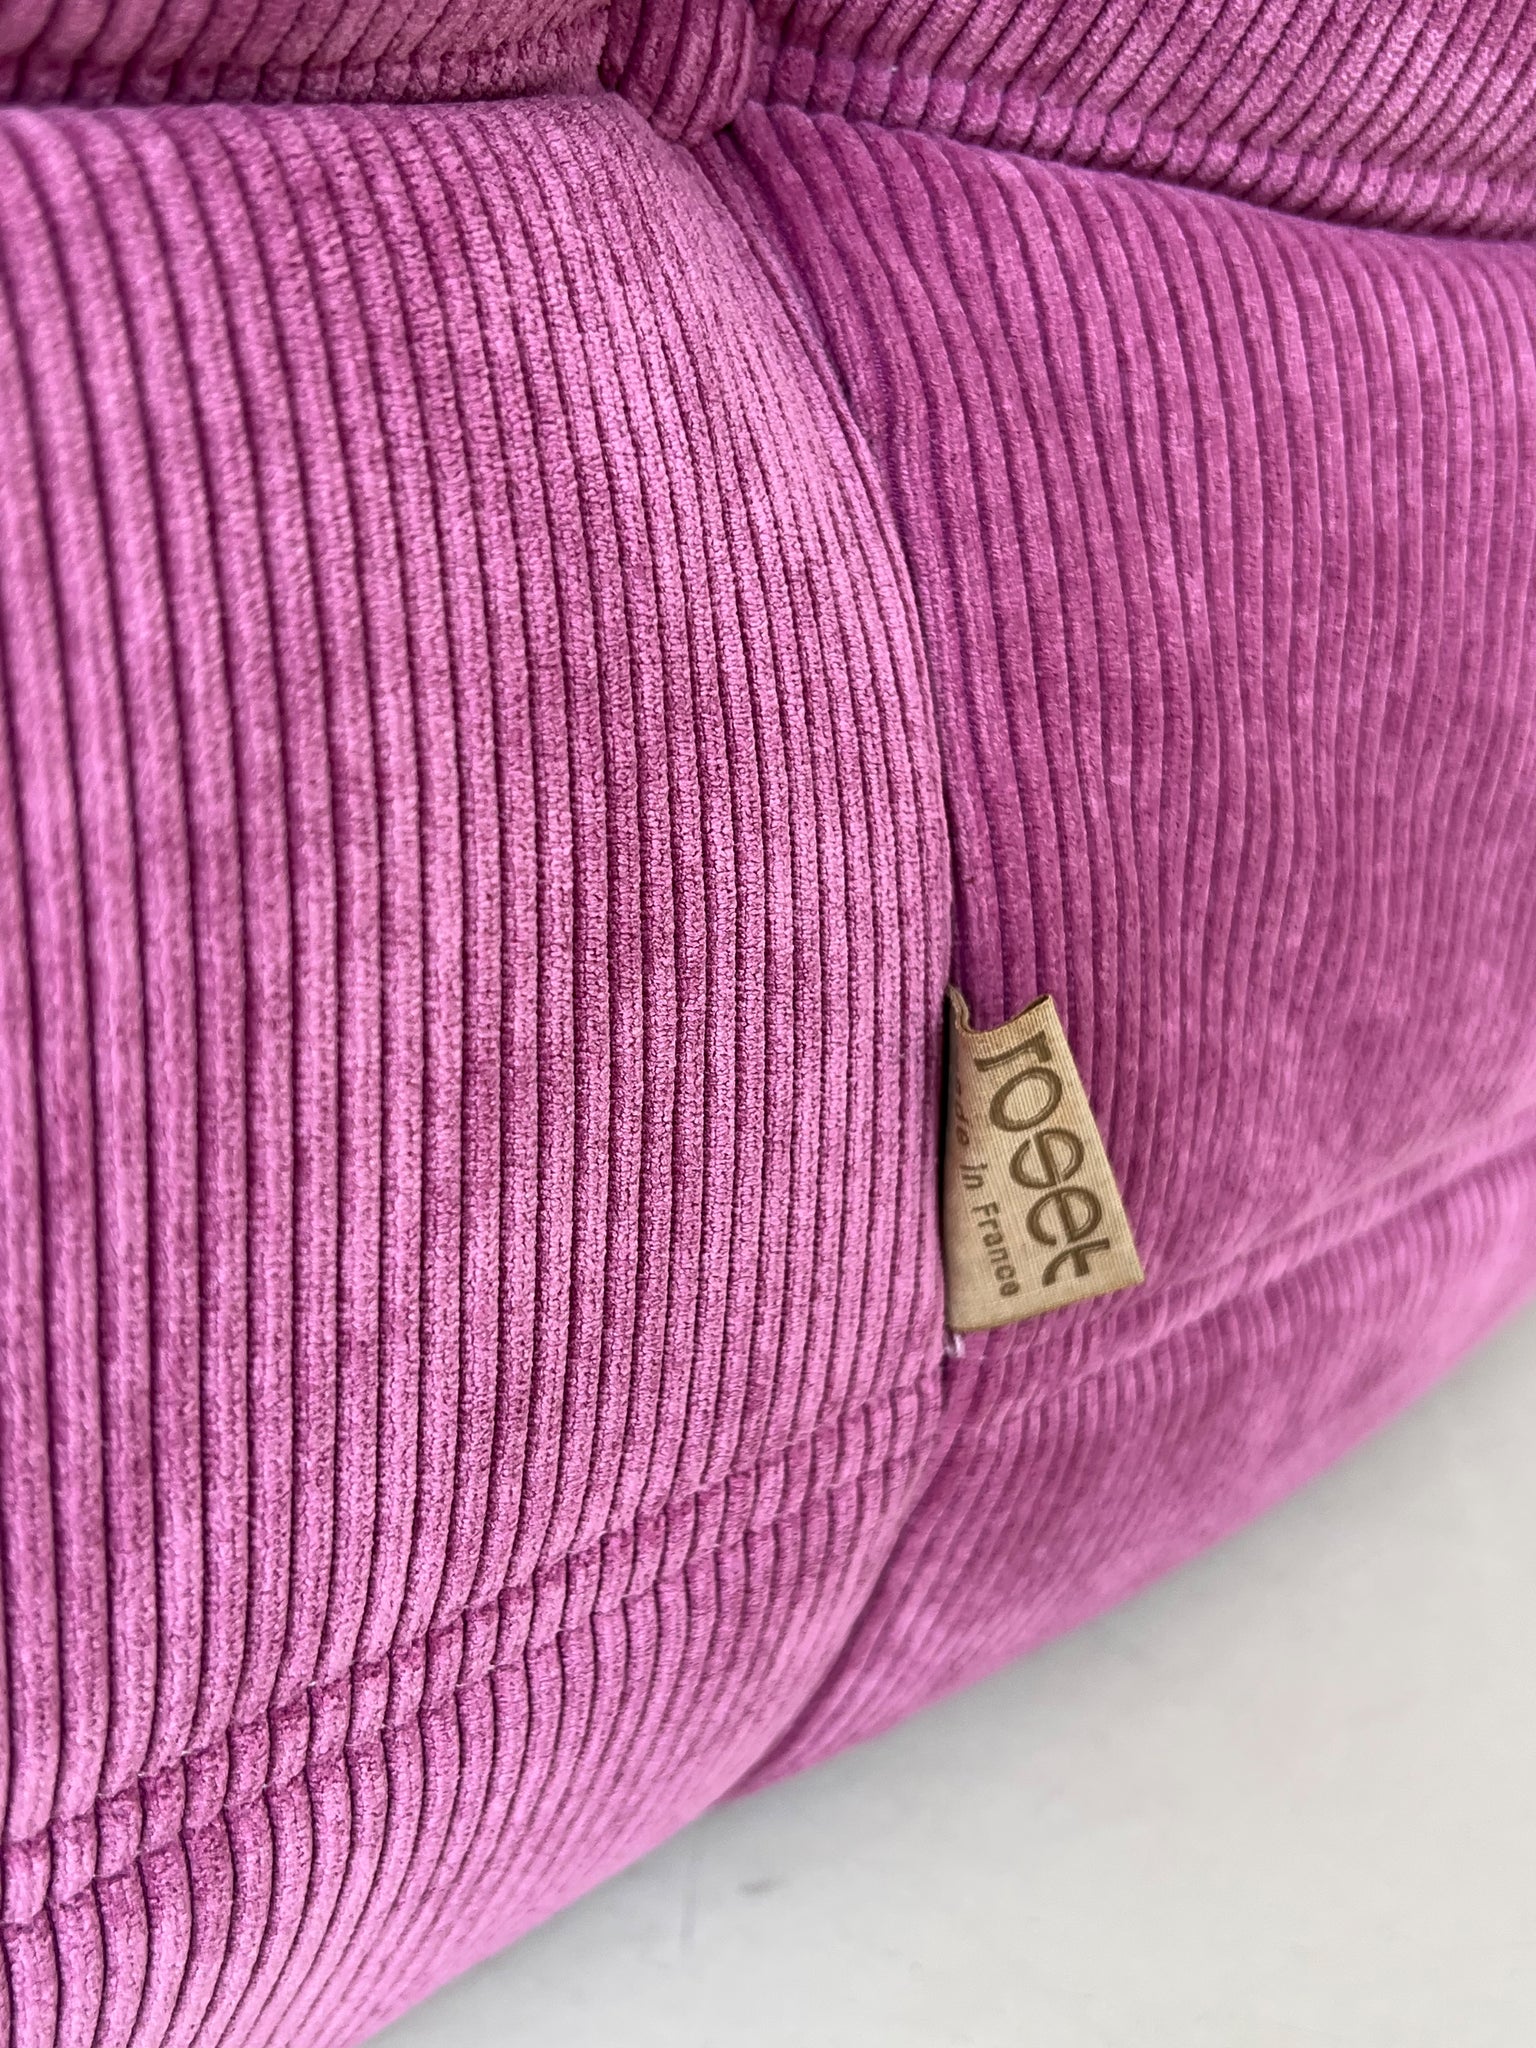 Vintage 2-Seater Pink Cord Ligne Roset Togo Sofa